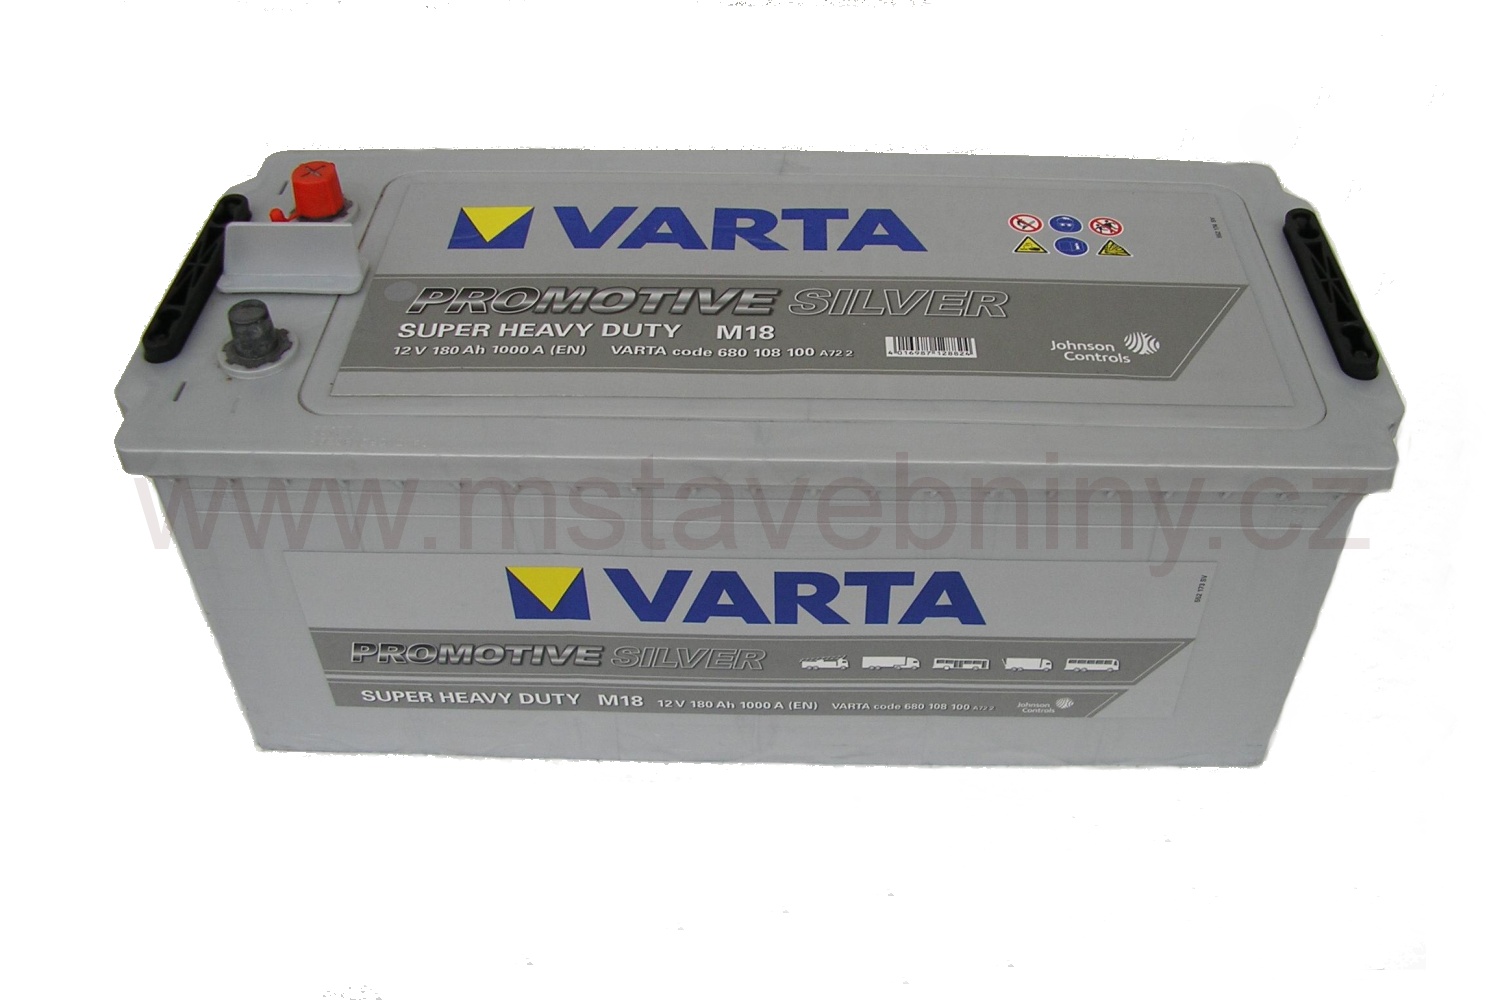 Autobaterie VARTA 12V-180Ah promotive silver